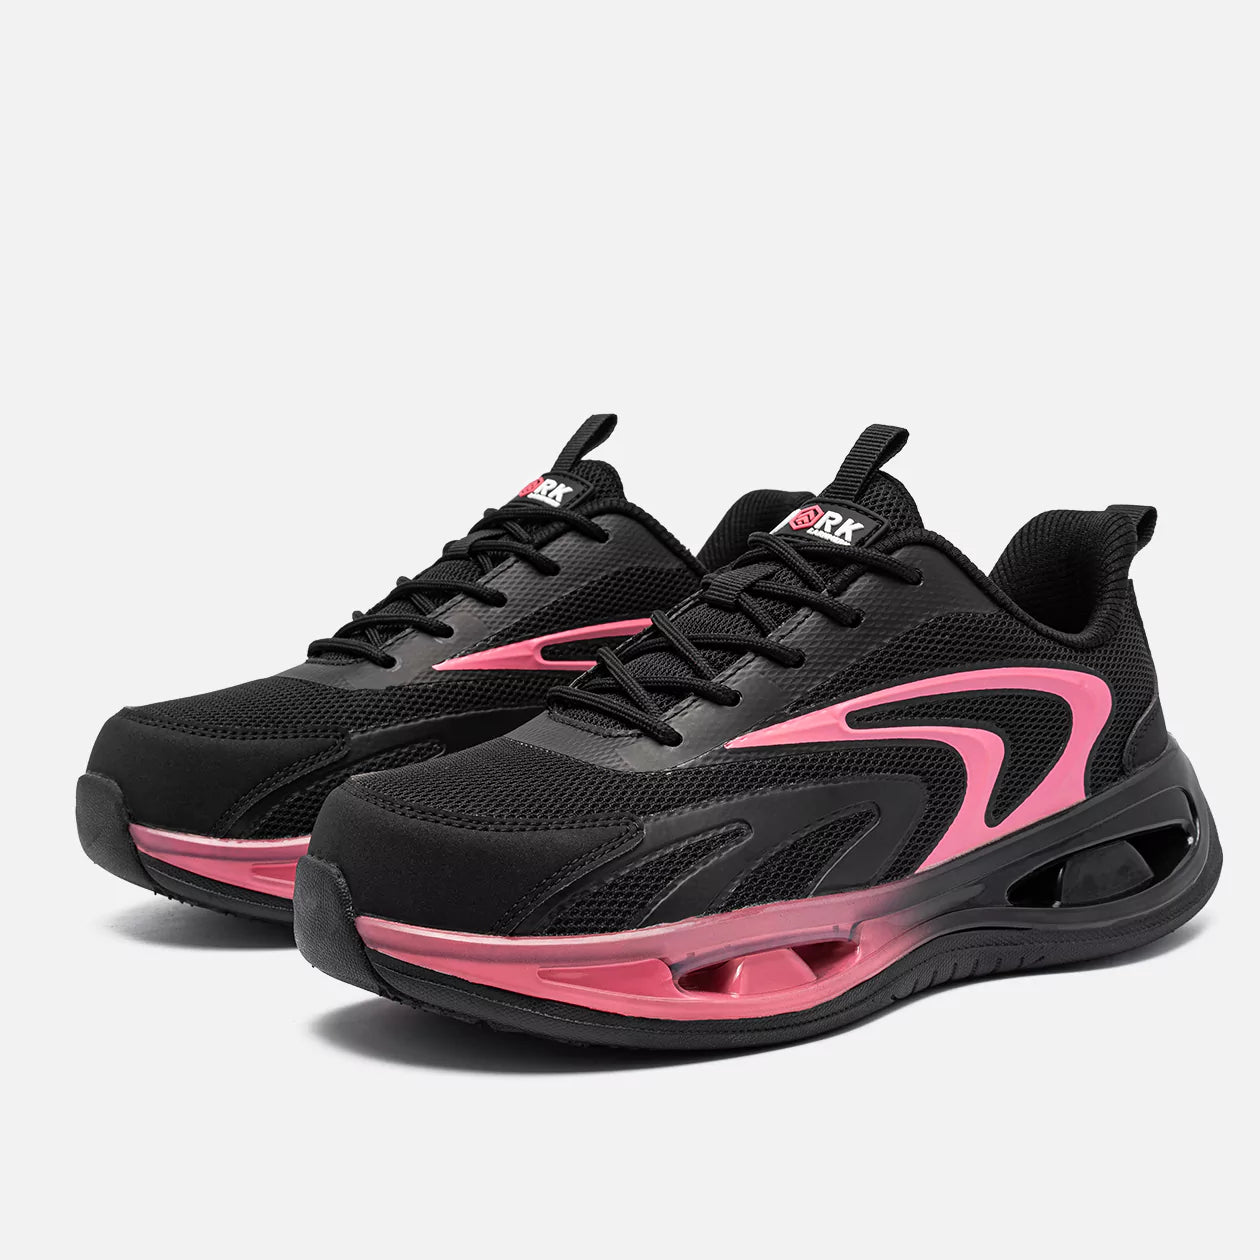 Larnmern 21094 Steel Toe Sneakers for Women, Pink